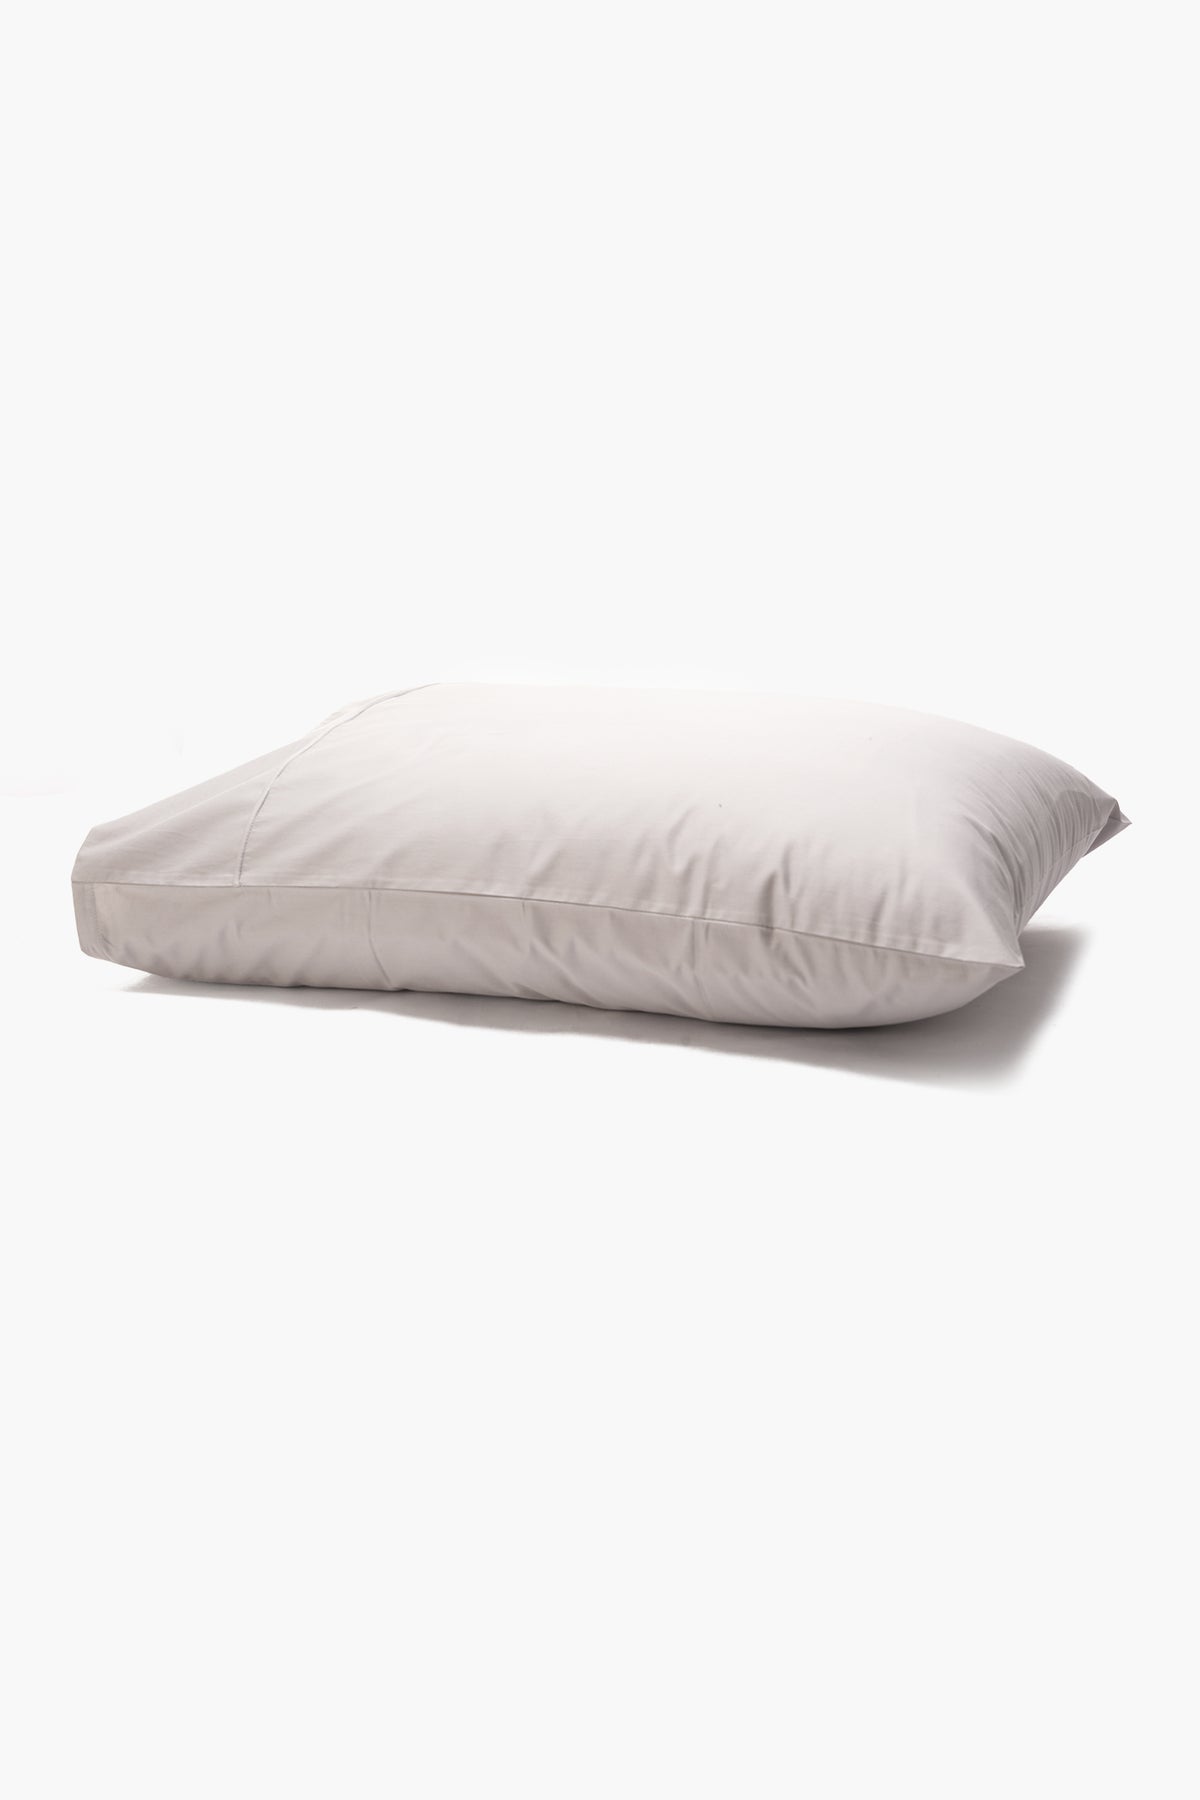 2 Pillow Cases - 50*70 cm